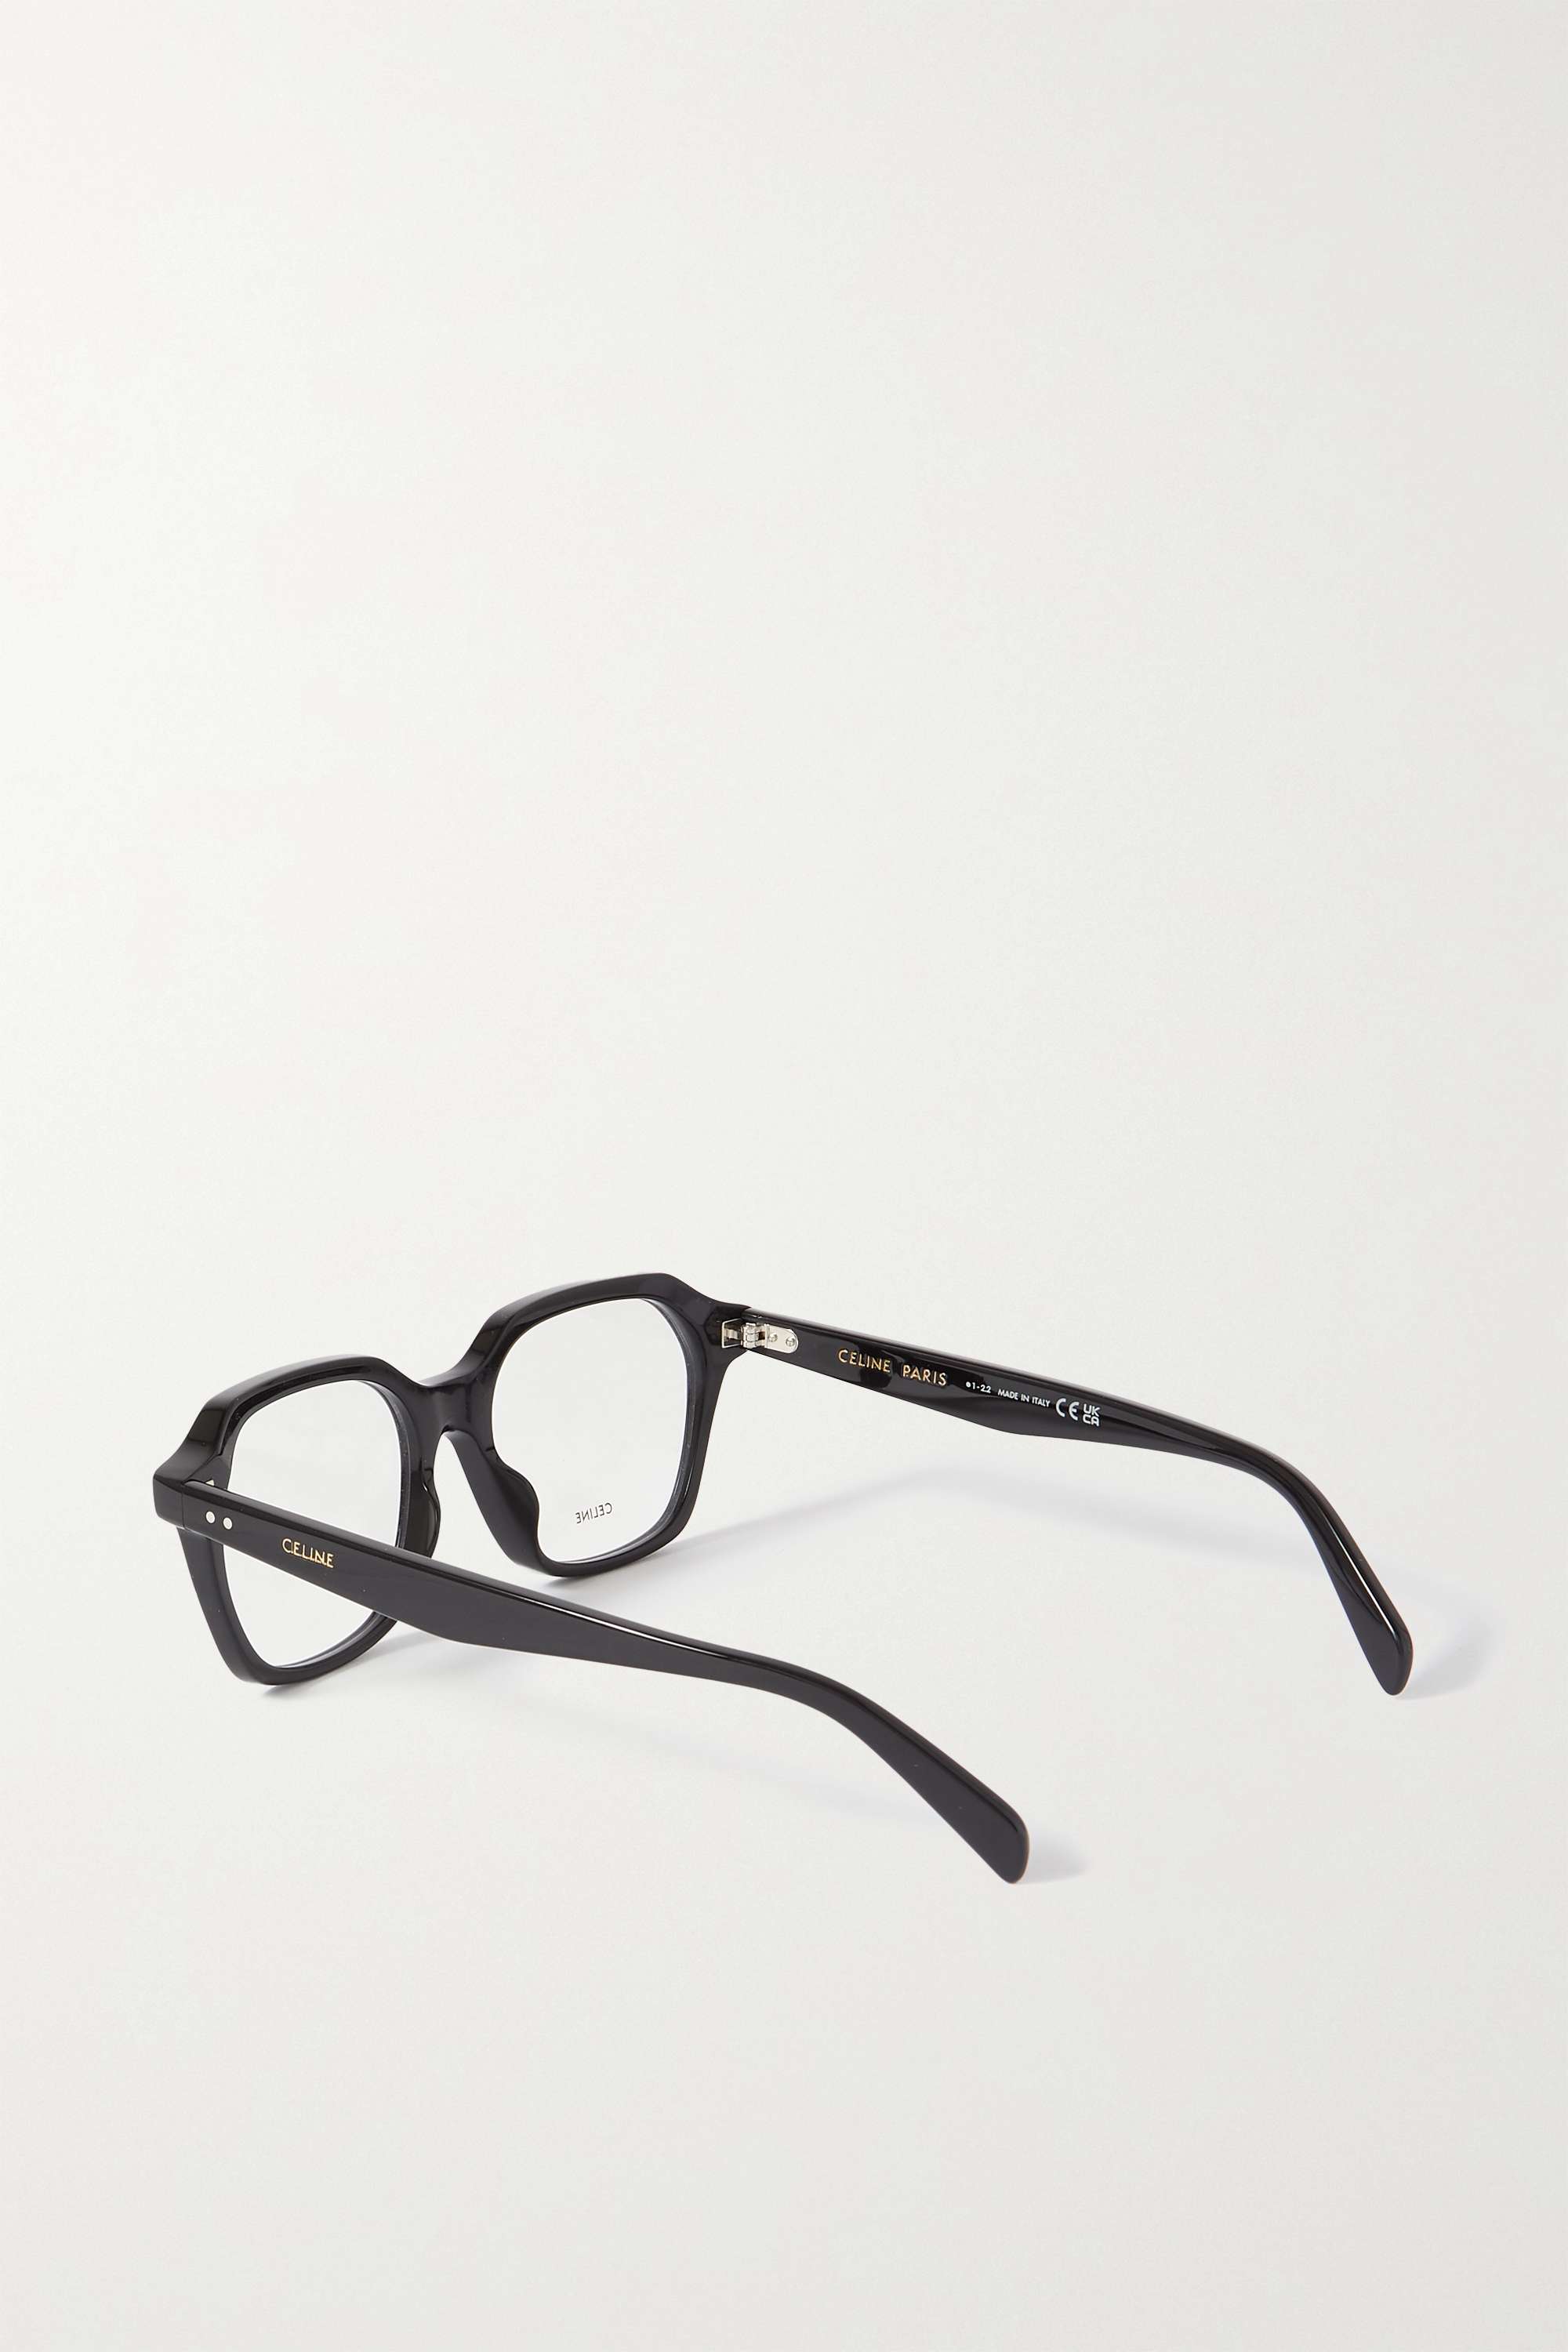 CELINE EYEWEAR ацетатные оптические очки в D-оправе, черный